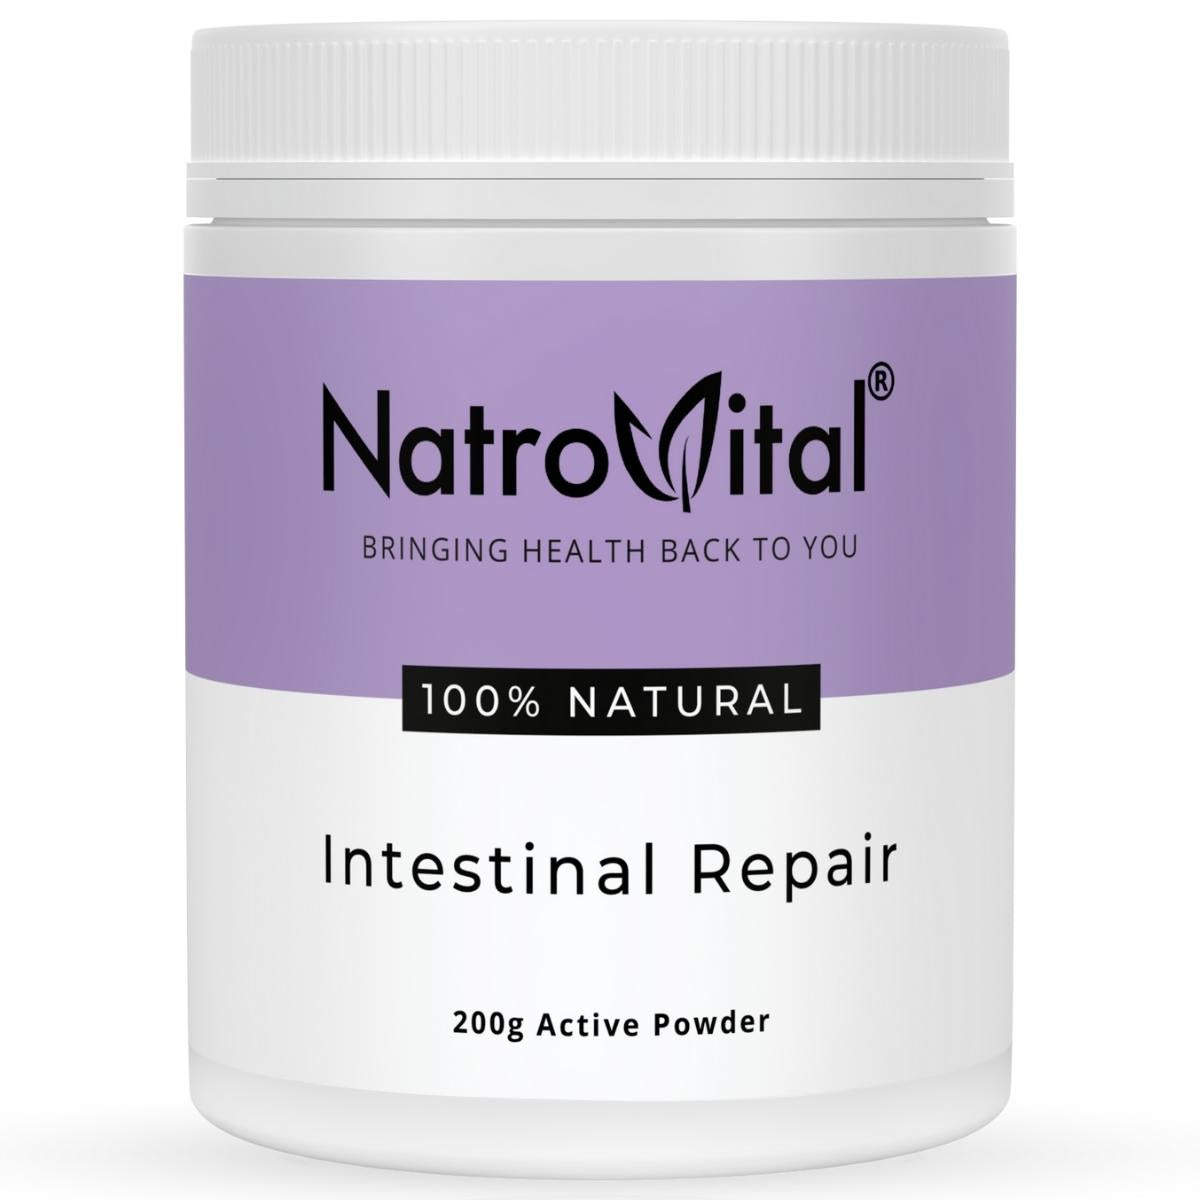 NatroVital Intestinal Repair